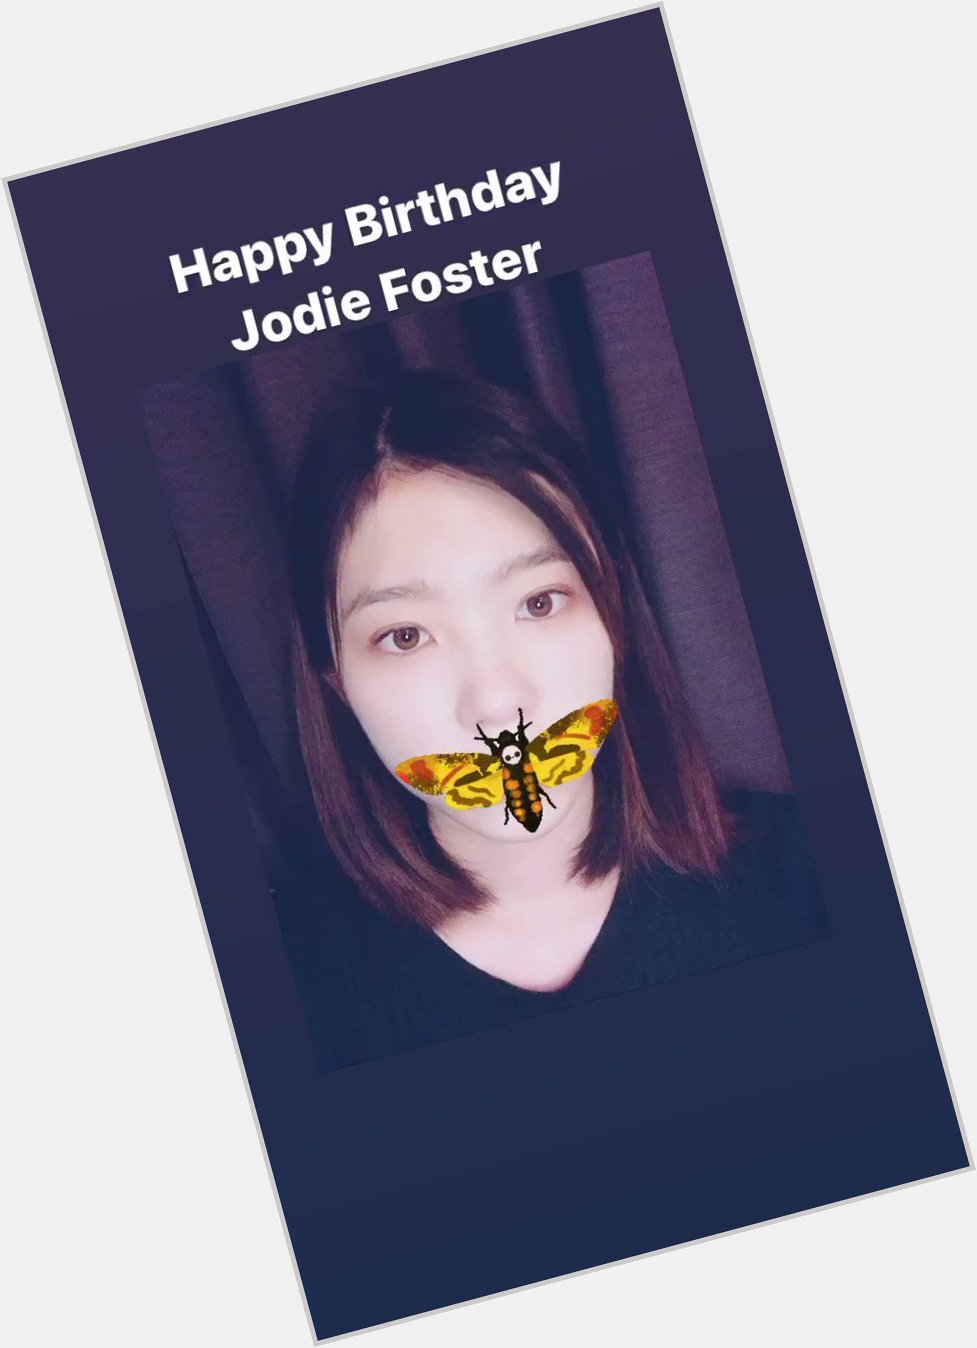                 Happy Birthday Jodie Foster!!! 